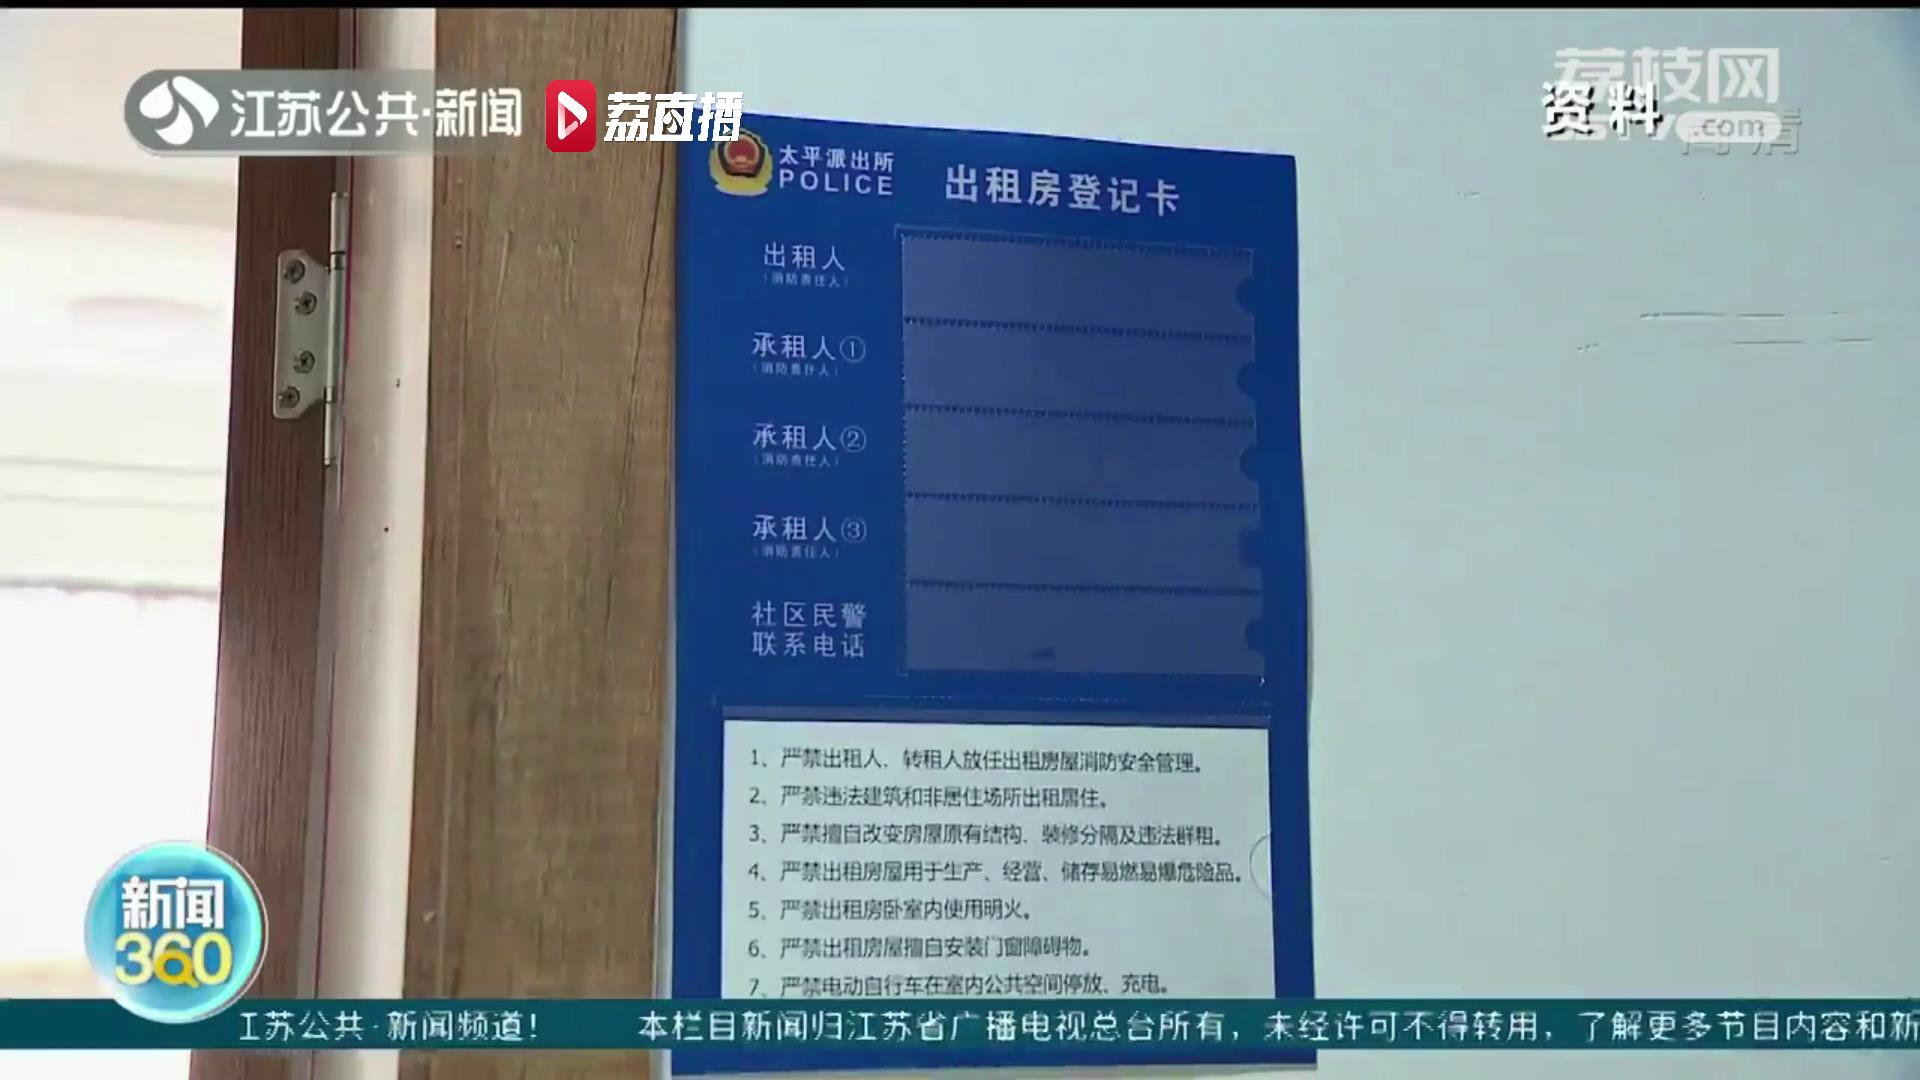 新版《南京市房屋租赁管理办法》将实施 提交虚假住房租赁备案材料最高罚三万